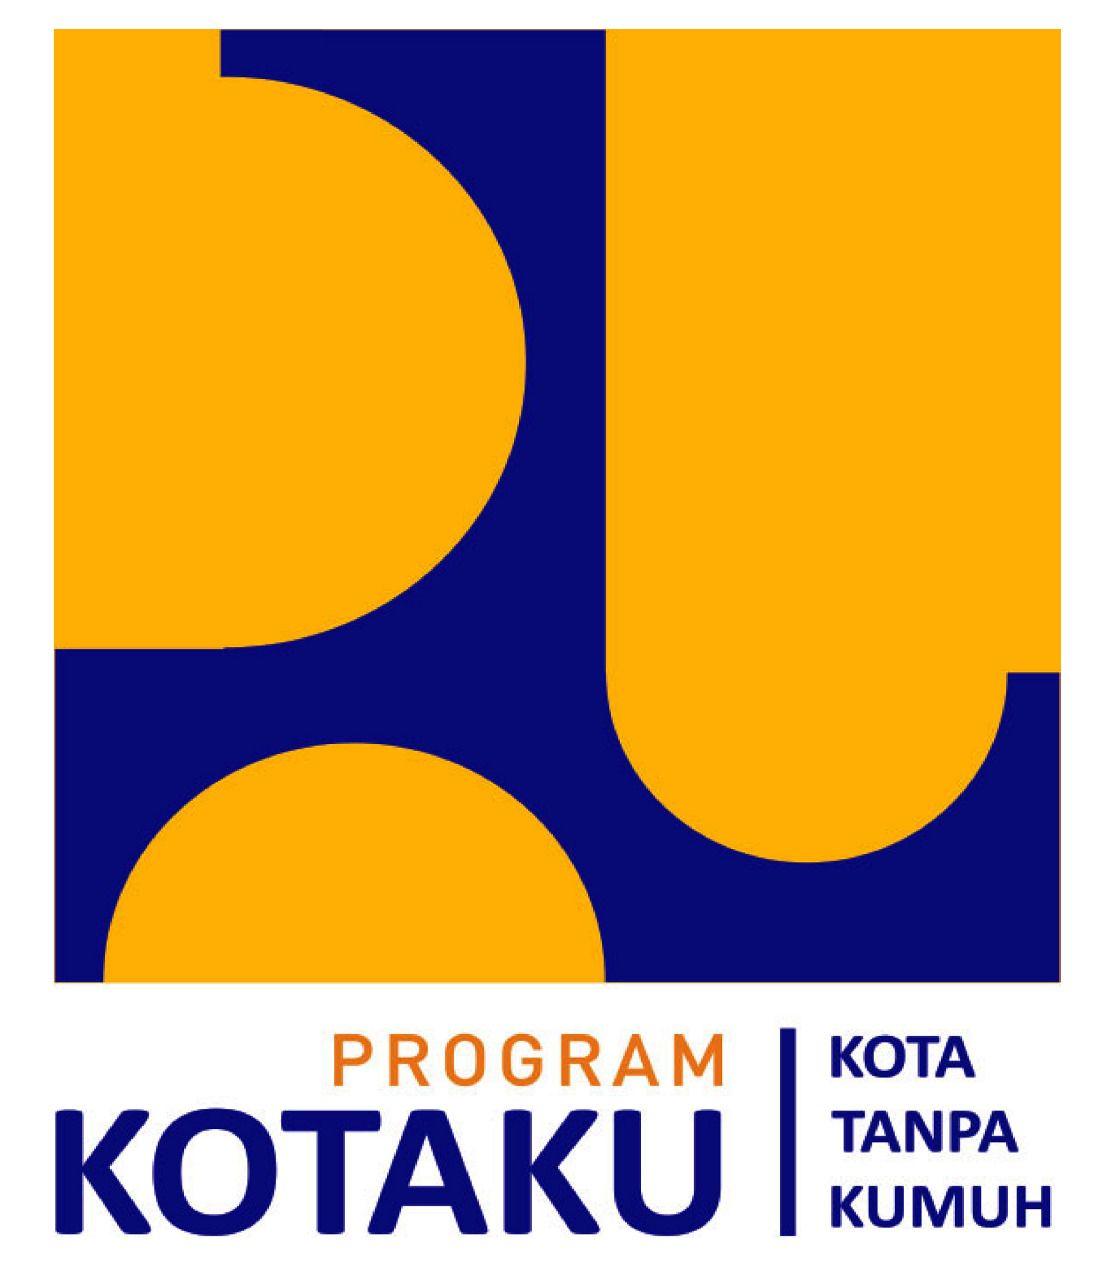 Kotaku Logo - LOGO BARU KOTAKU ~ PROGRAM KOTA TANPA KUMUH (KOTAKU)